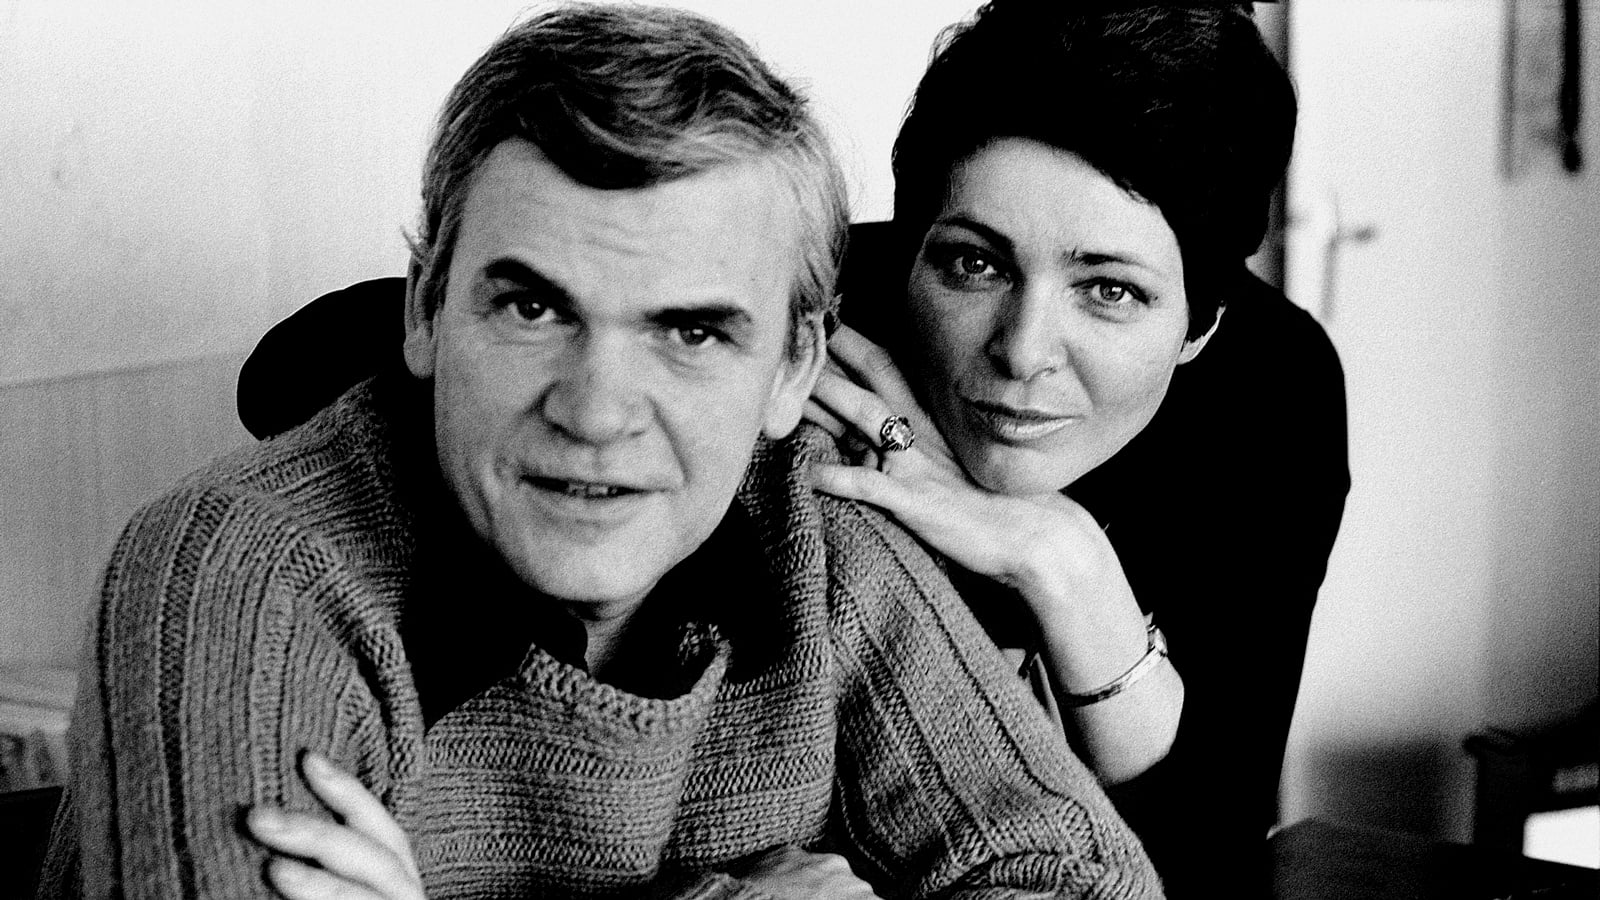 Milan Kundera: od žertu k bezvýznamnosti